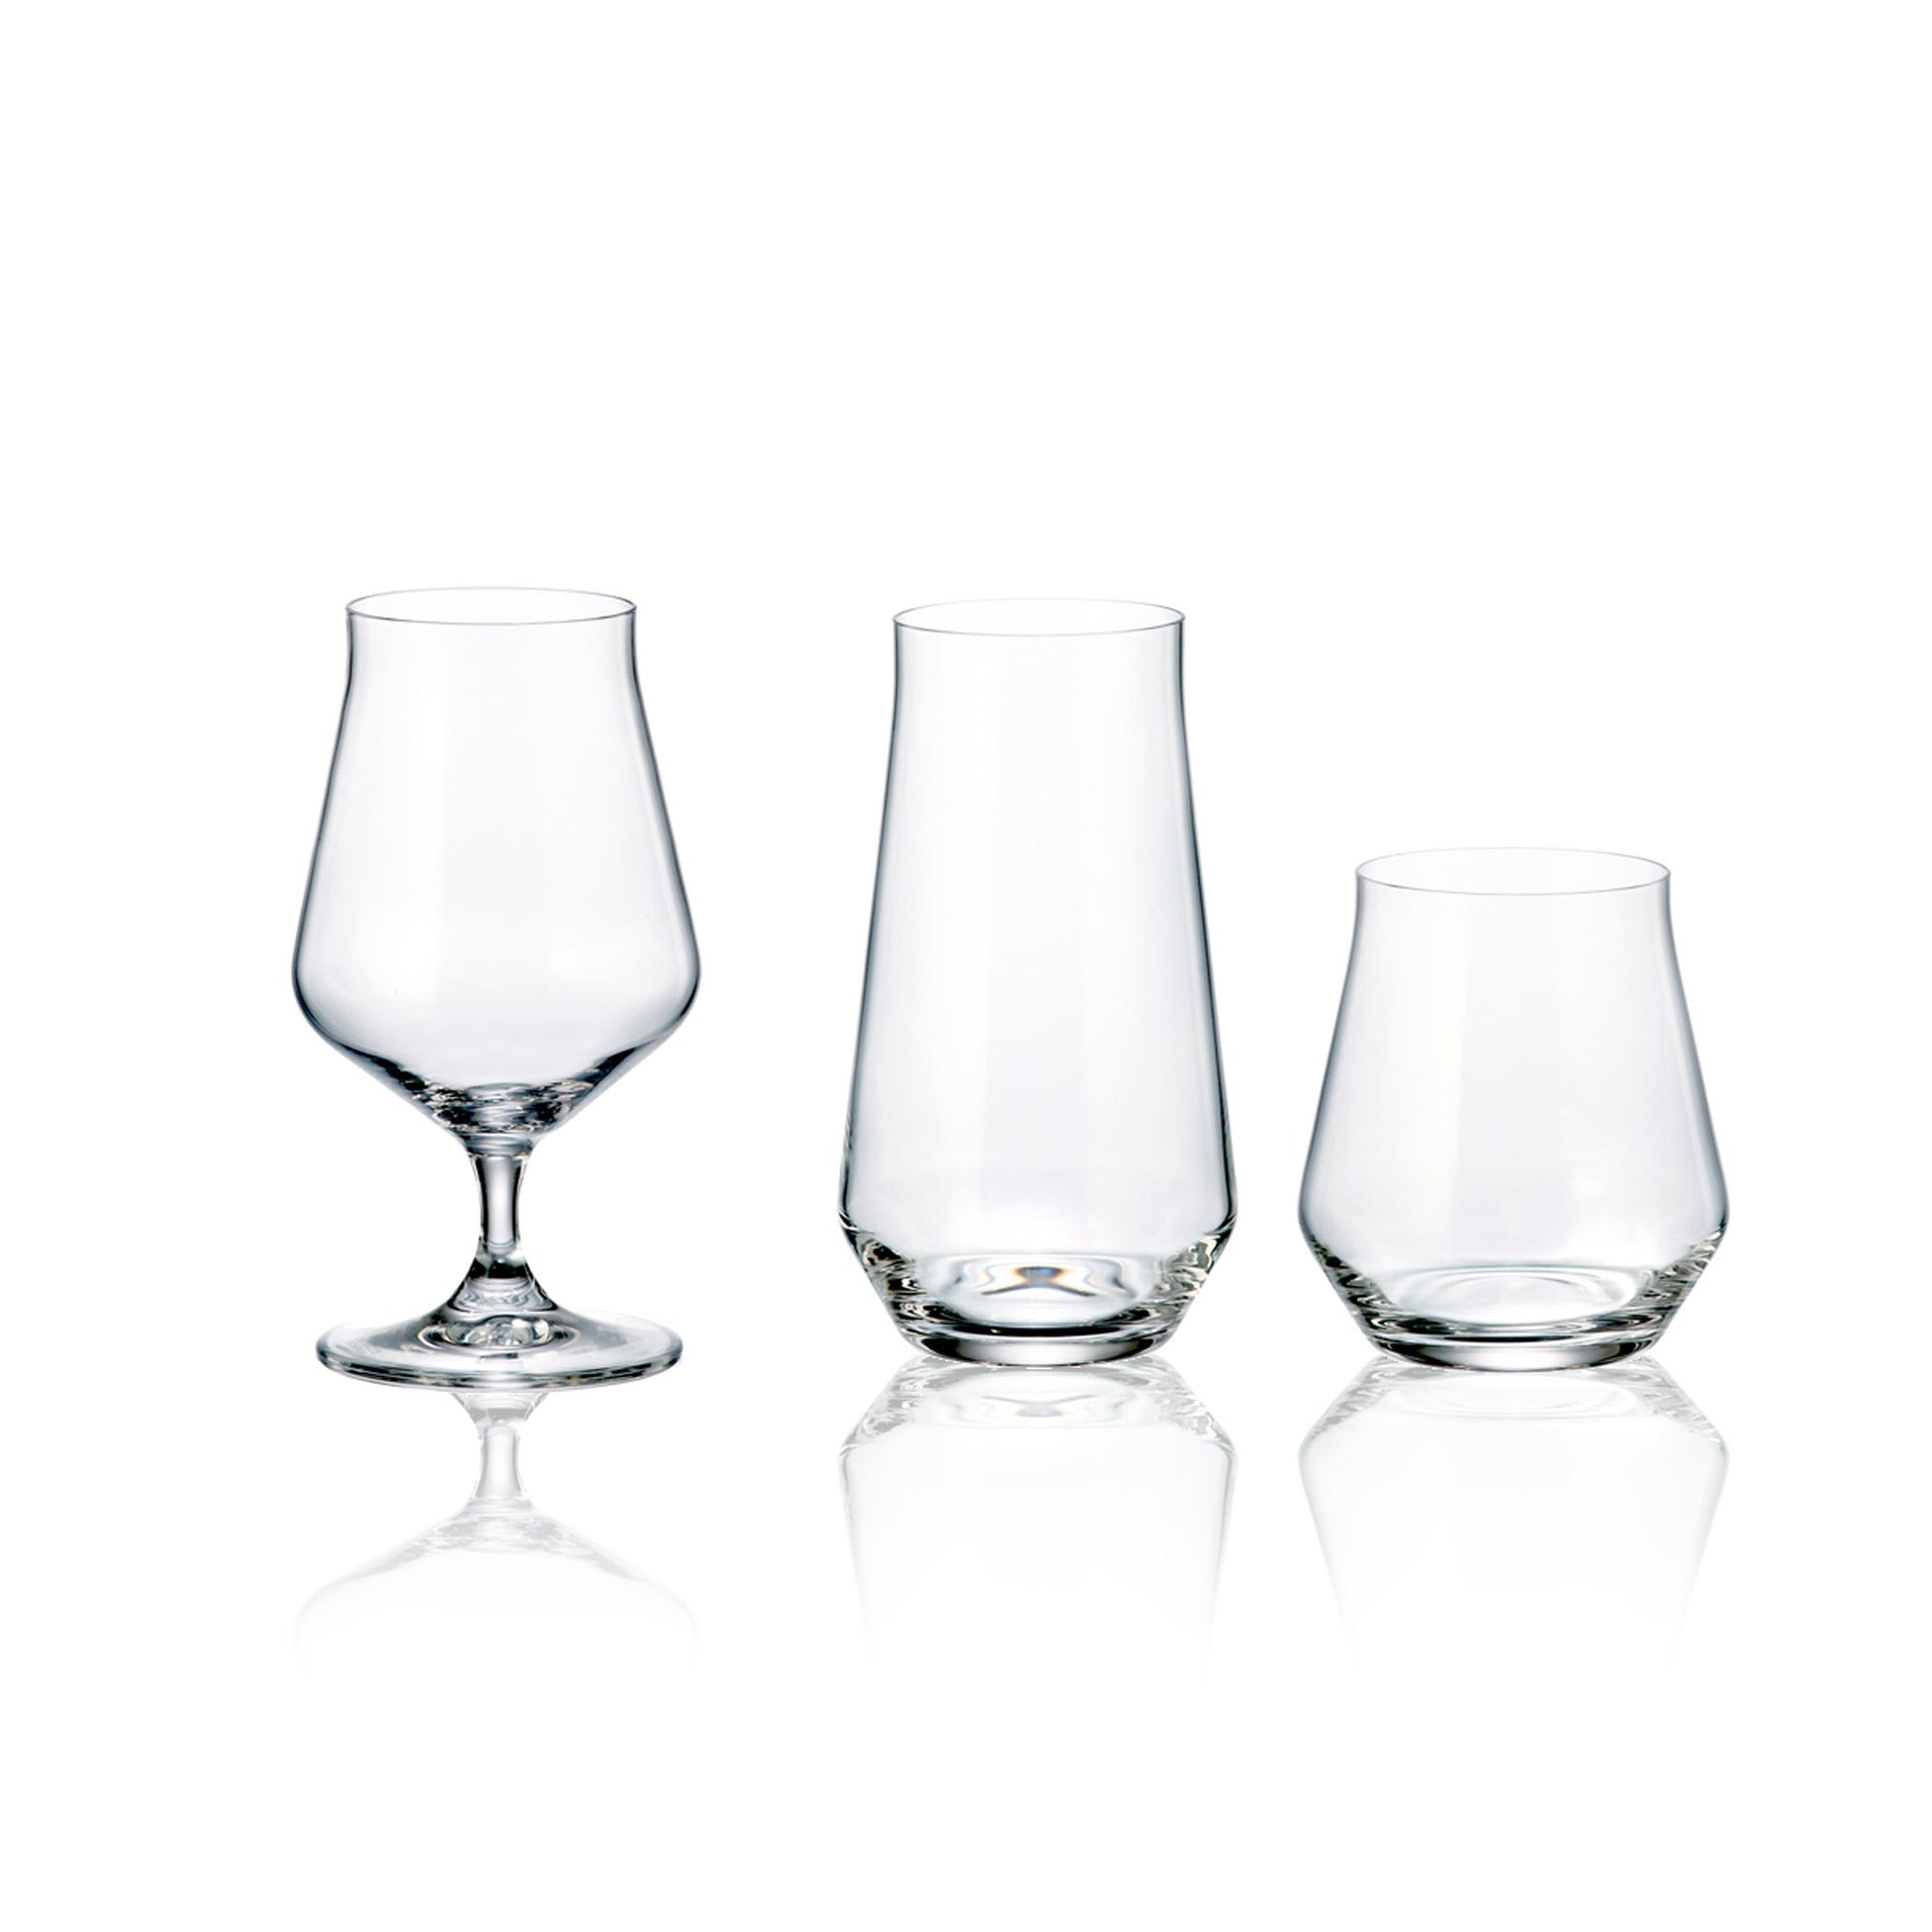 Servizio bicchieri da degustazione basso dallo stile moderno composto da 37 pezzi